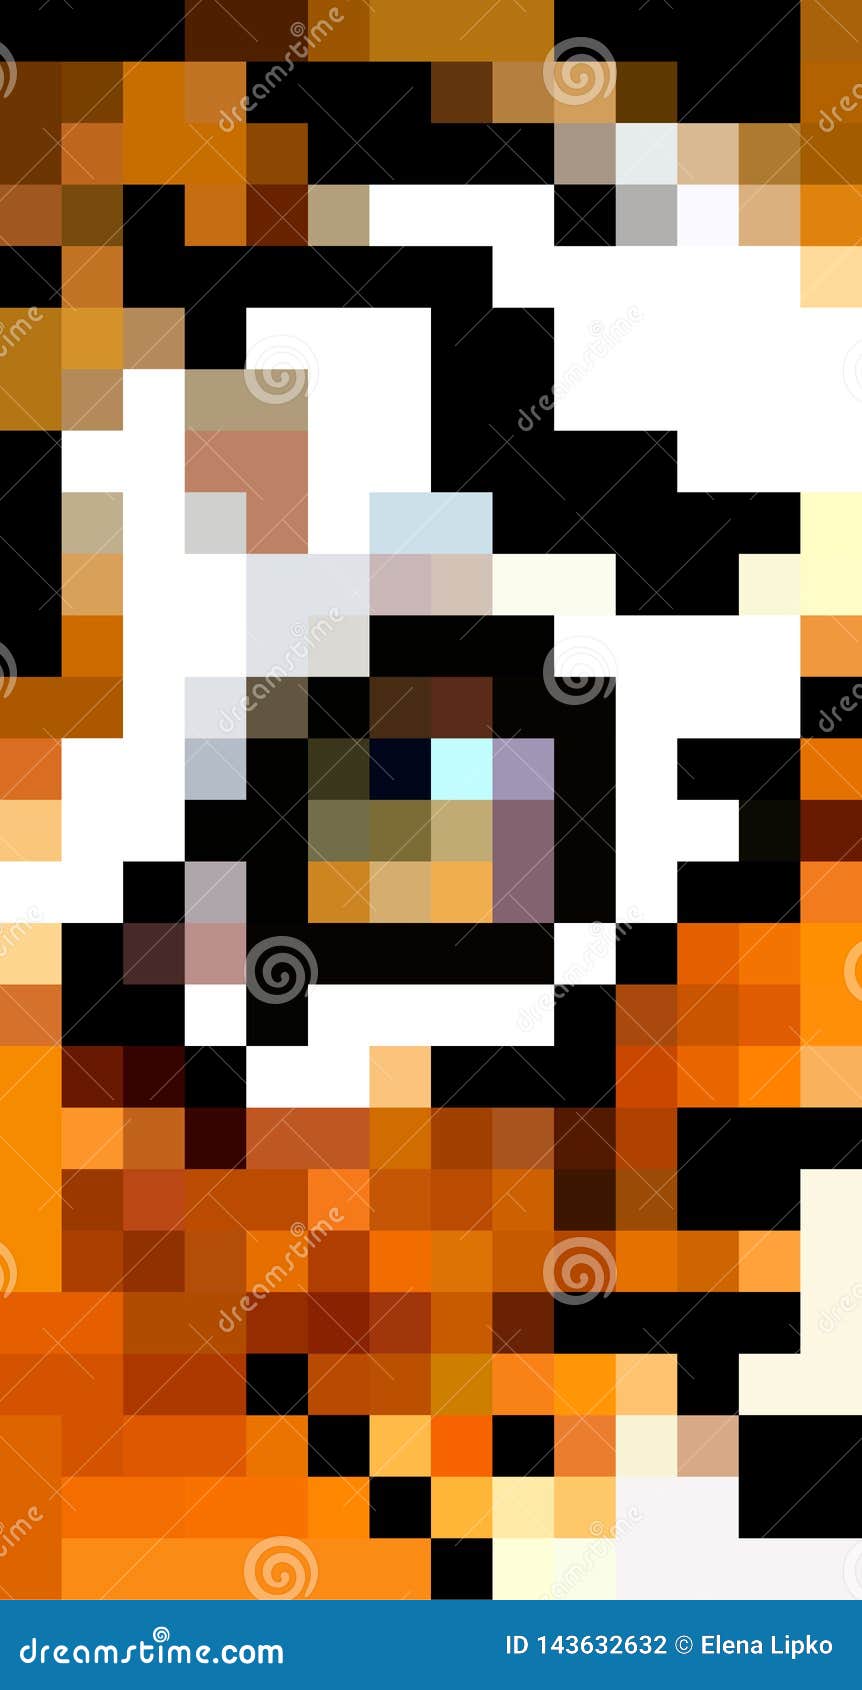 Animal Pixel Art Eye Of Tiger Pixel Illustration Stock